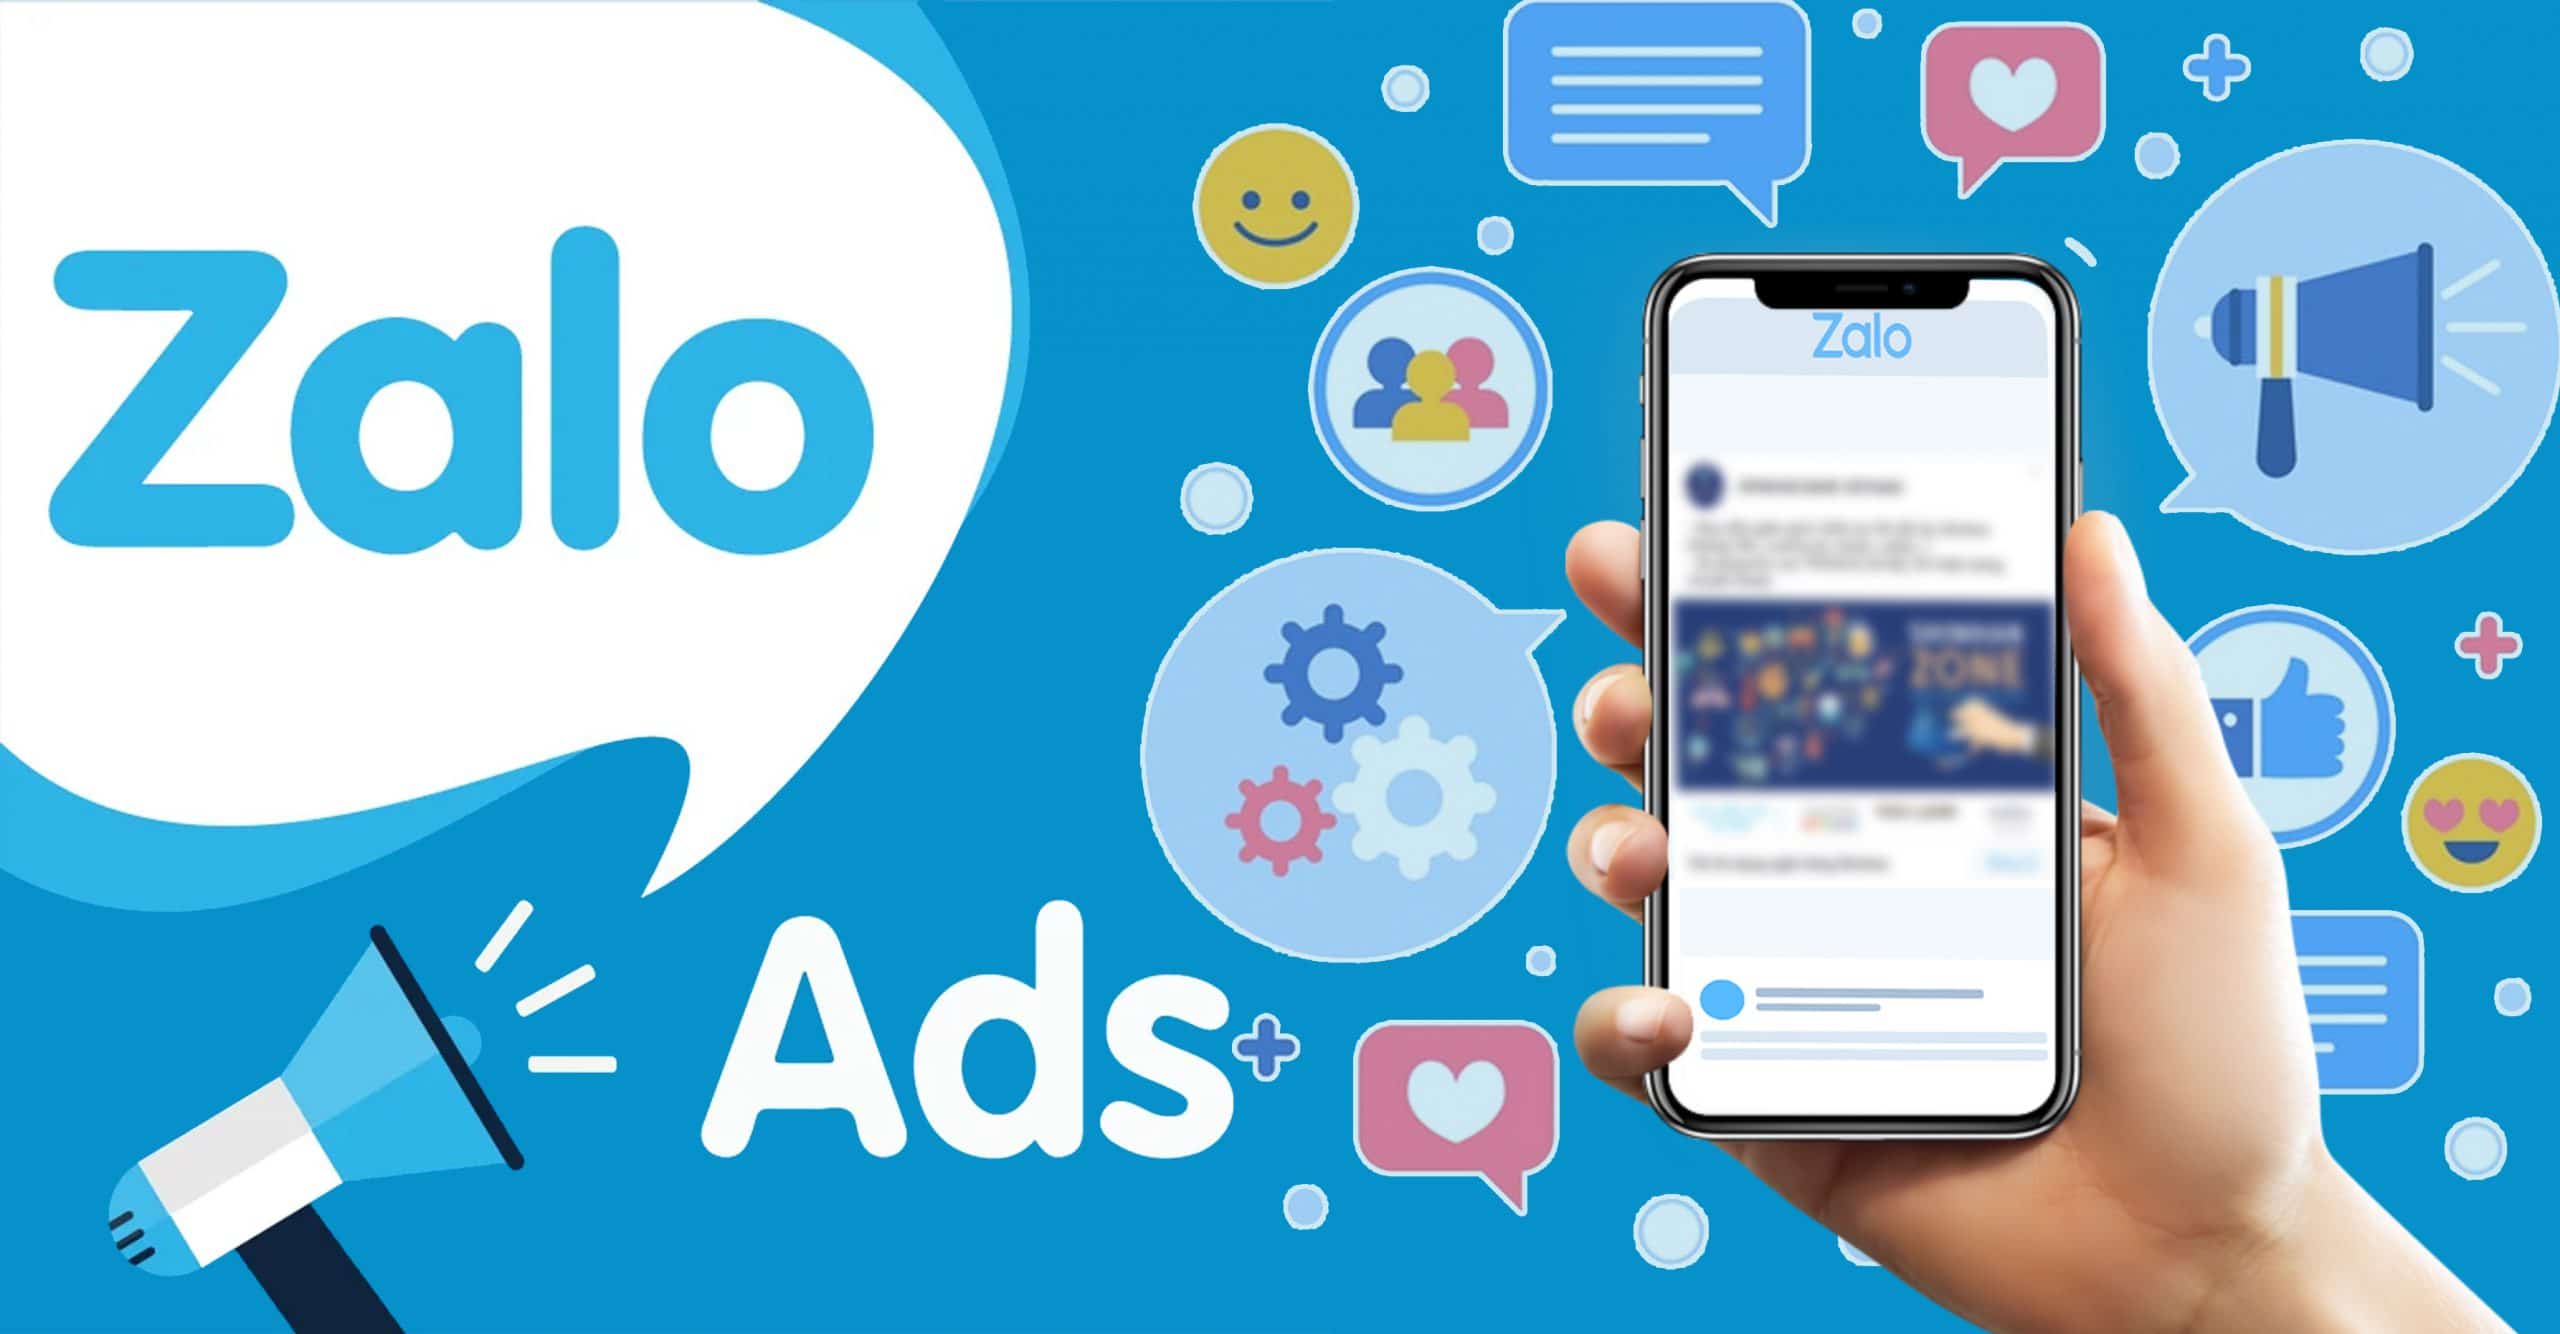 Hướng dẫn chạy quảng cáo Zalo Ads hiệu quả 2020